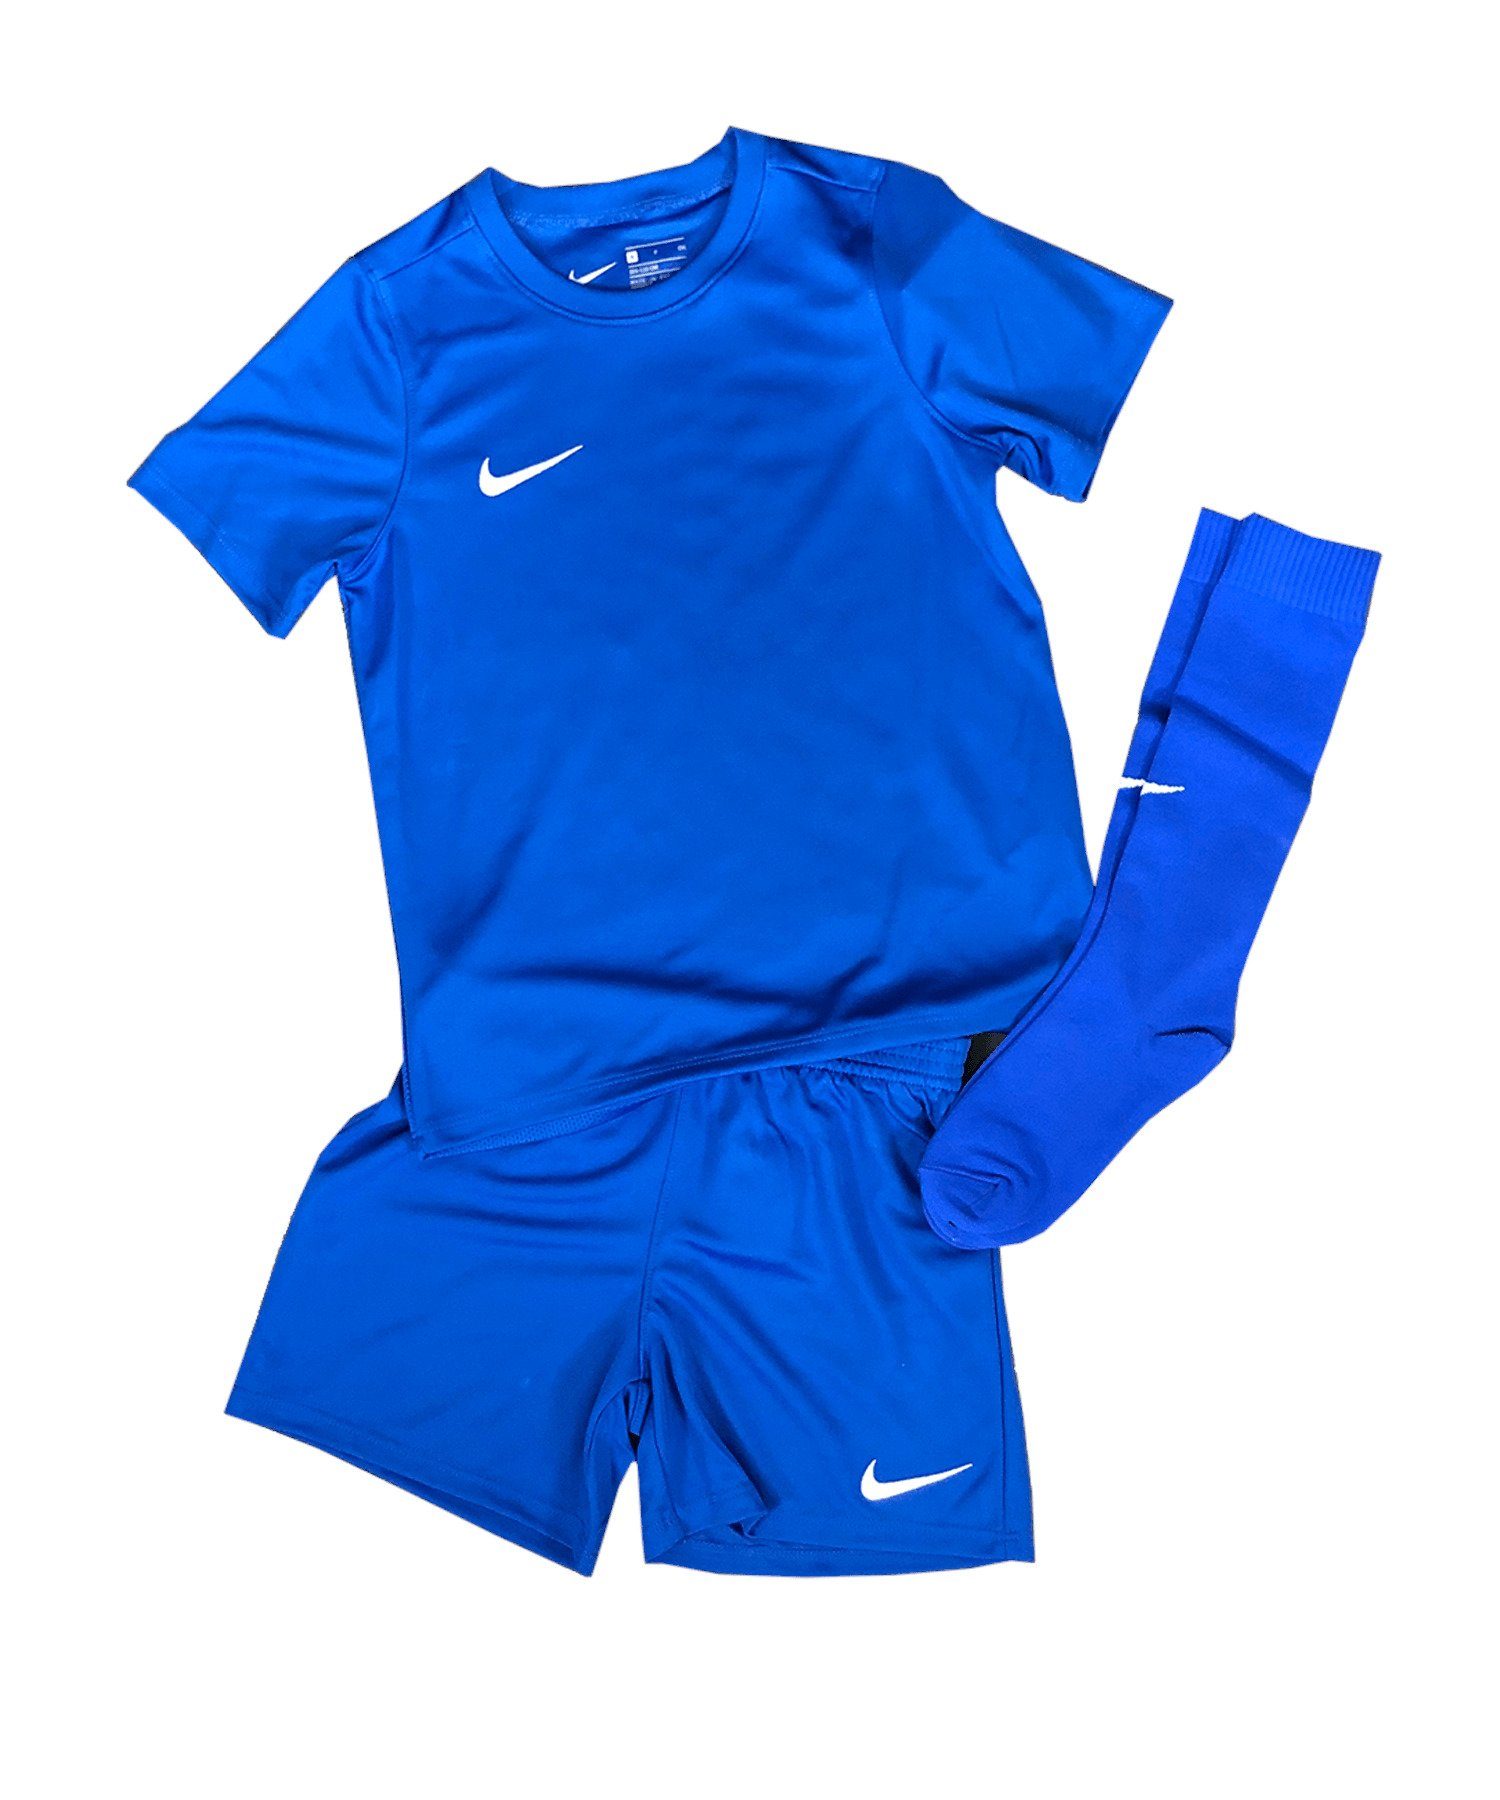 Park Nike 20 Kids Kit blauweiss Fußballtrikot